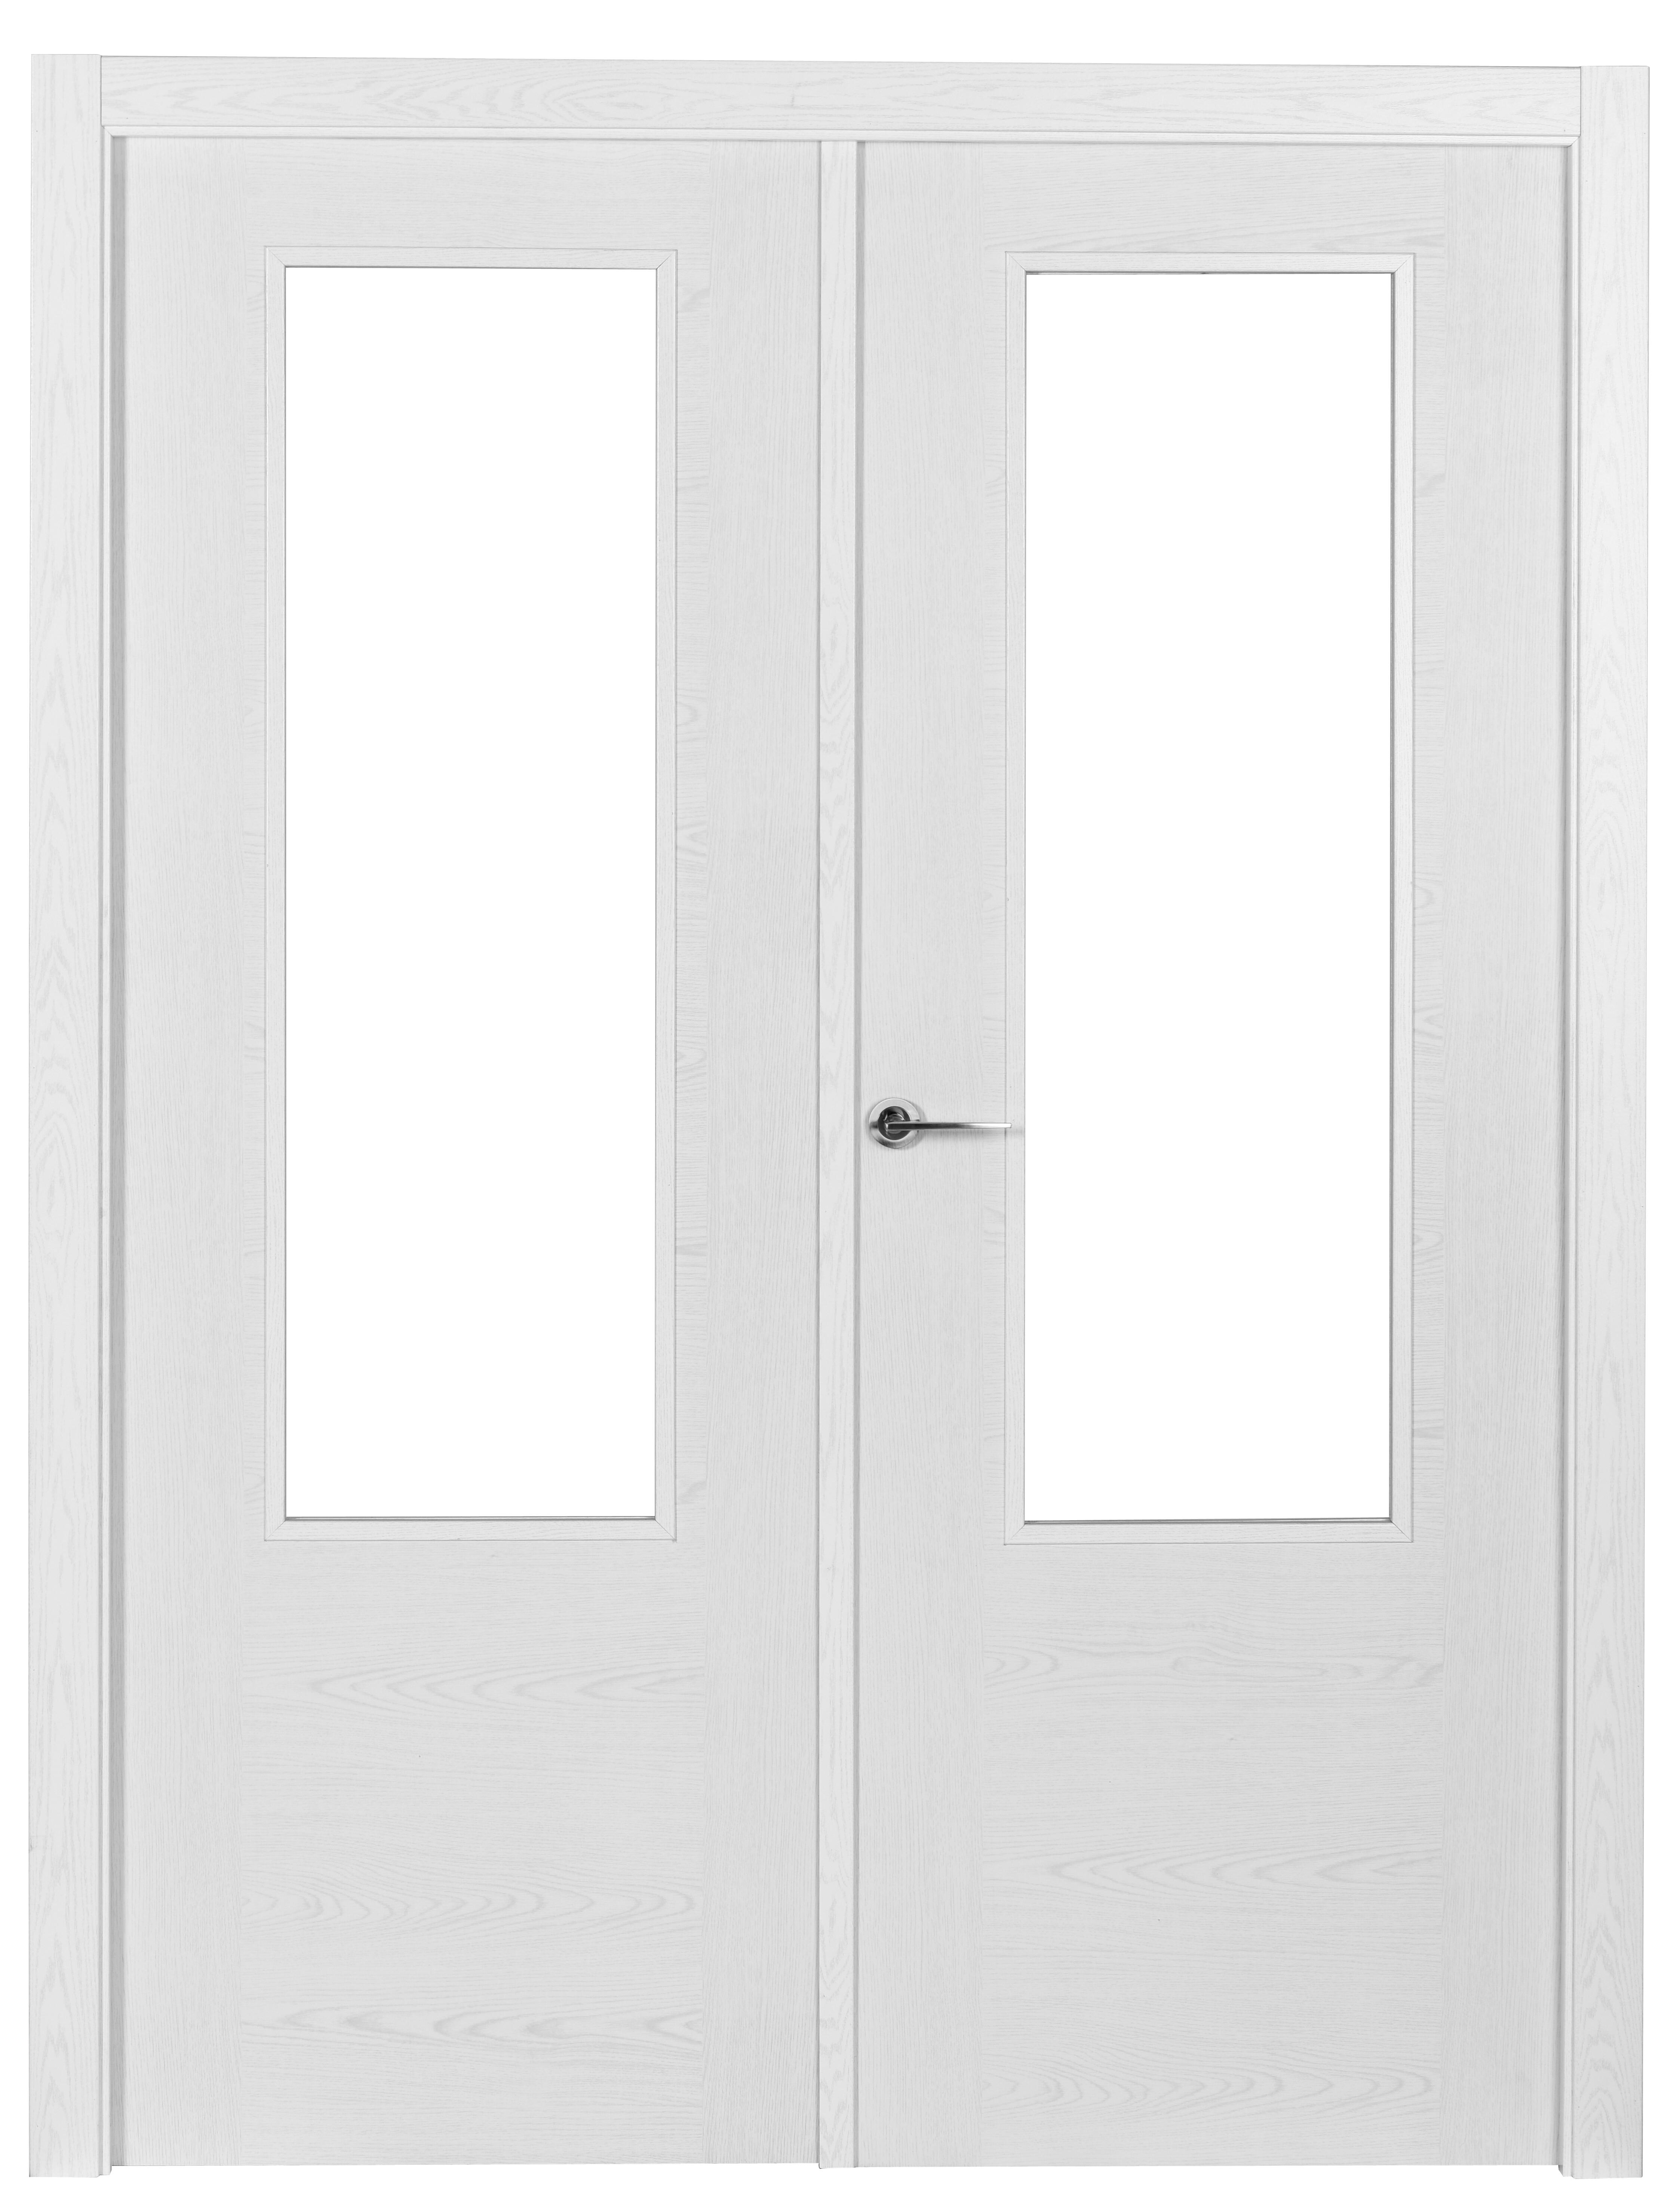 Puerta canarias blanco apertura derecha con cristal 125cm